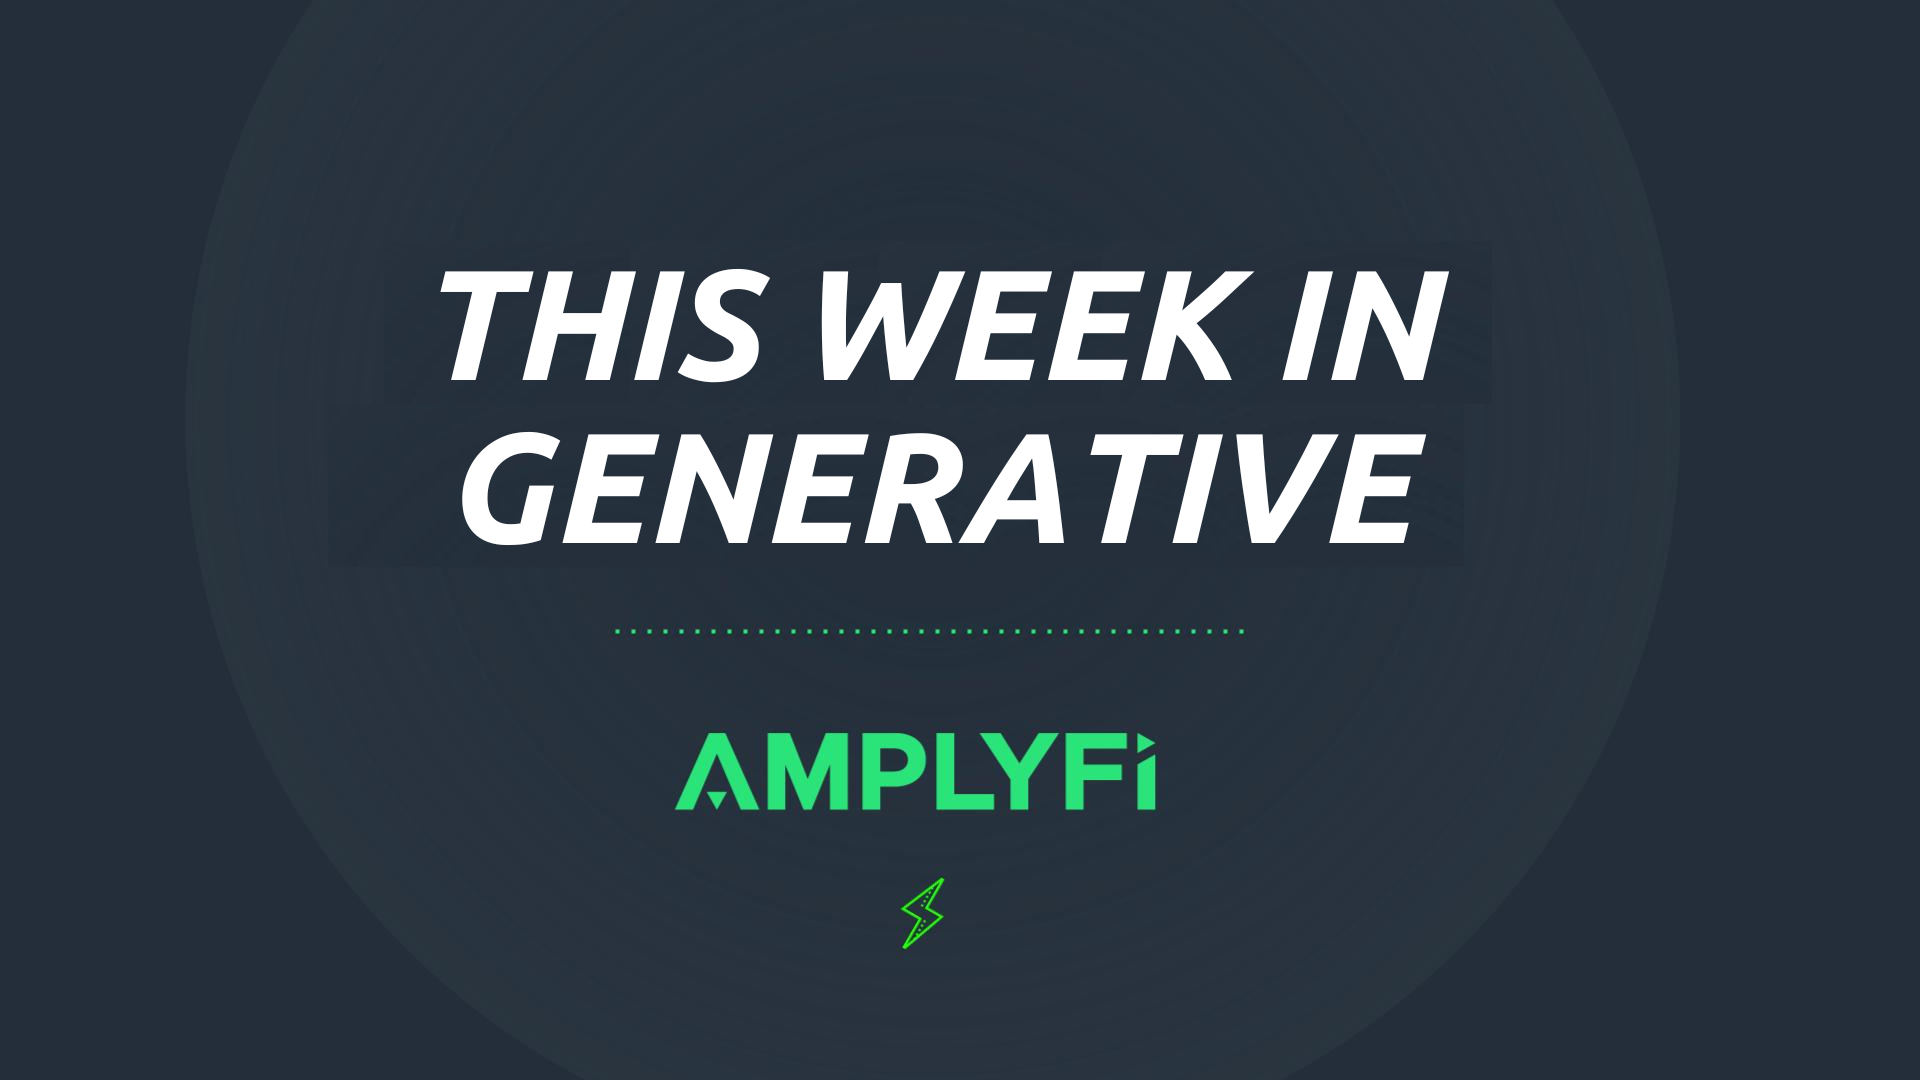 This week in Generative